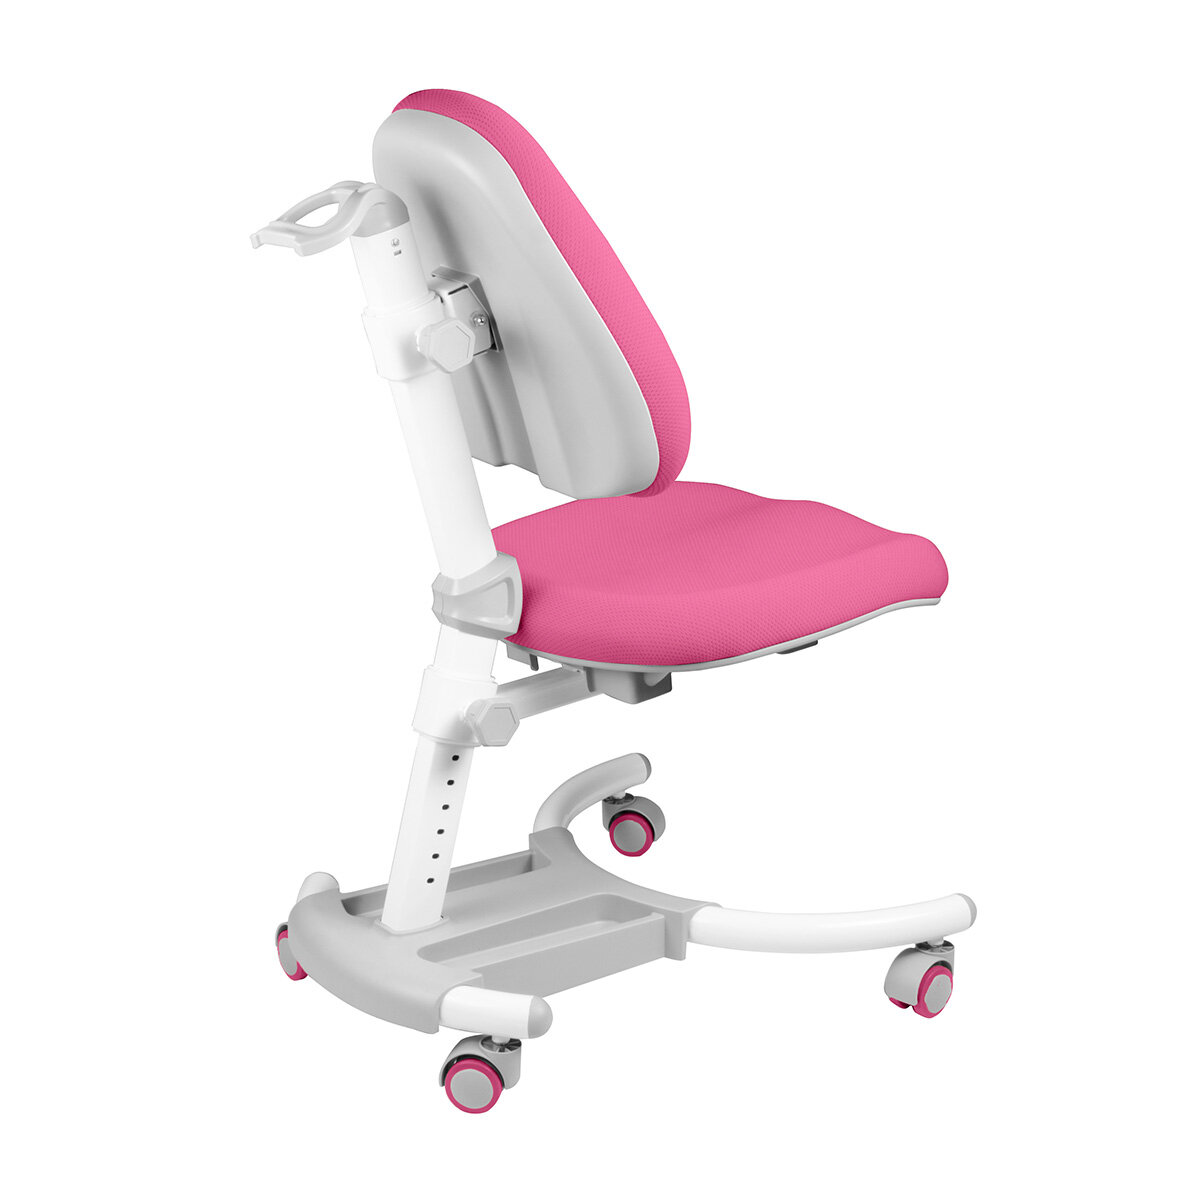 Комплект Kinderzen парта + кресло, цвет белый/розовый c розовым креслом - фотография № 11